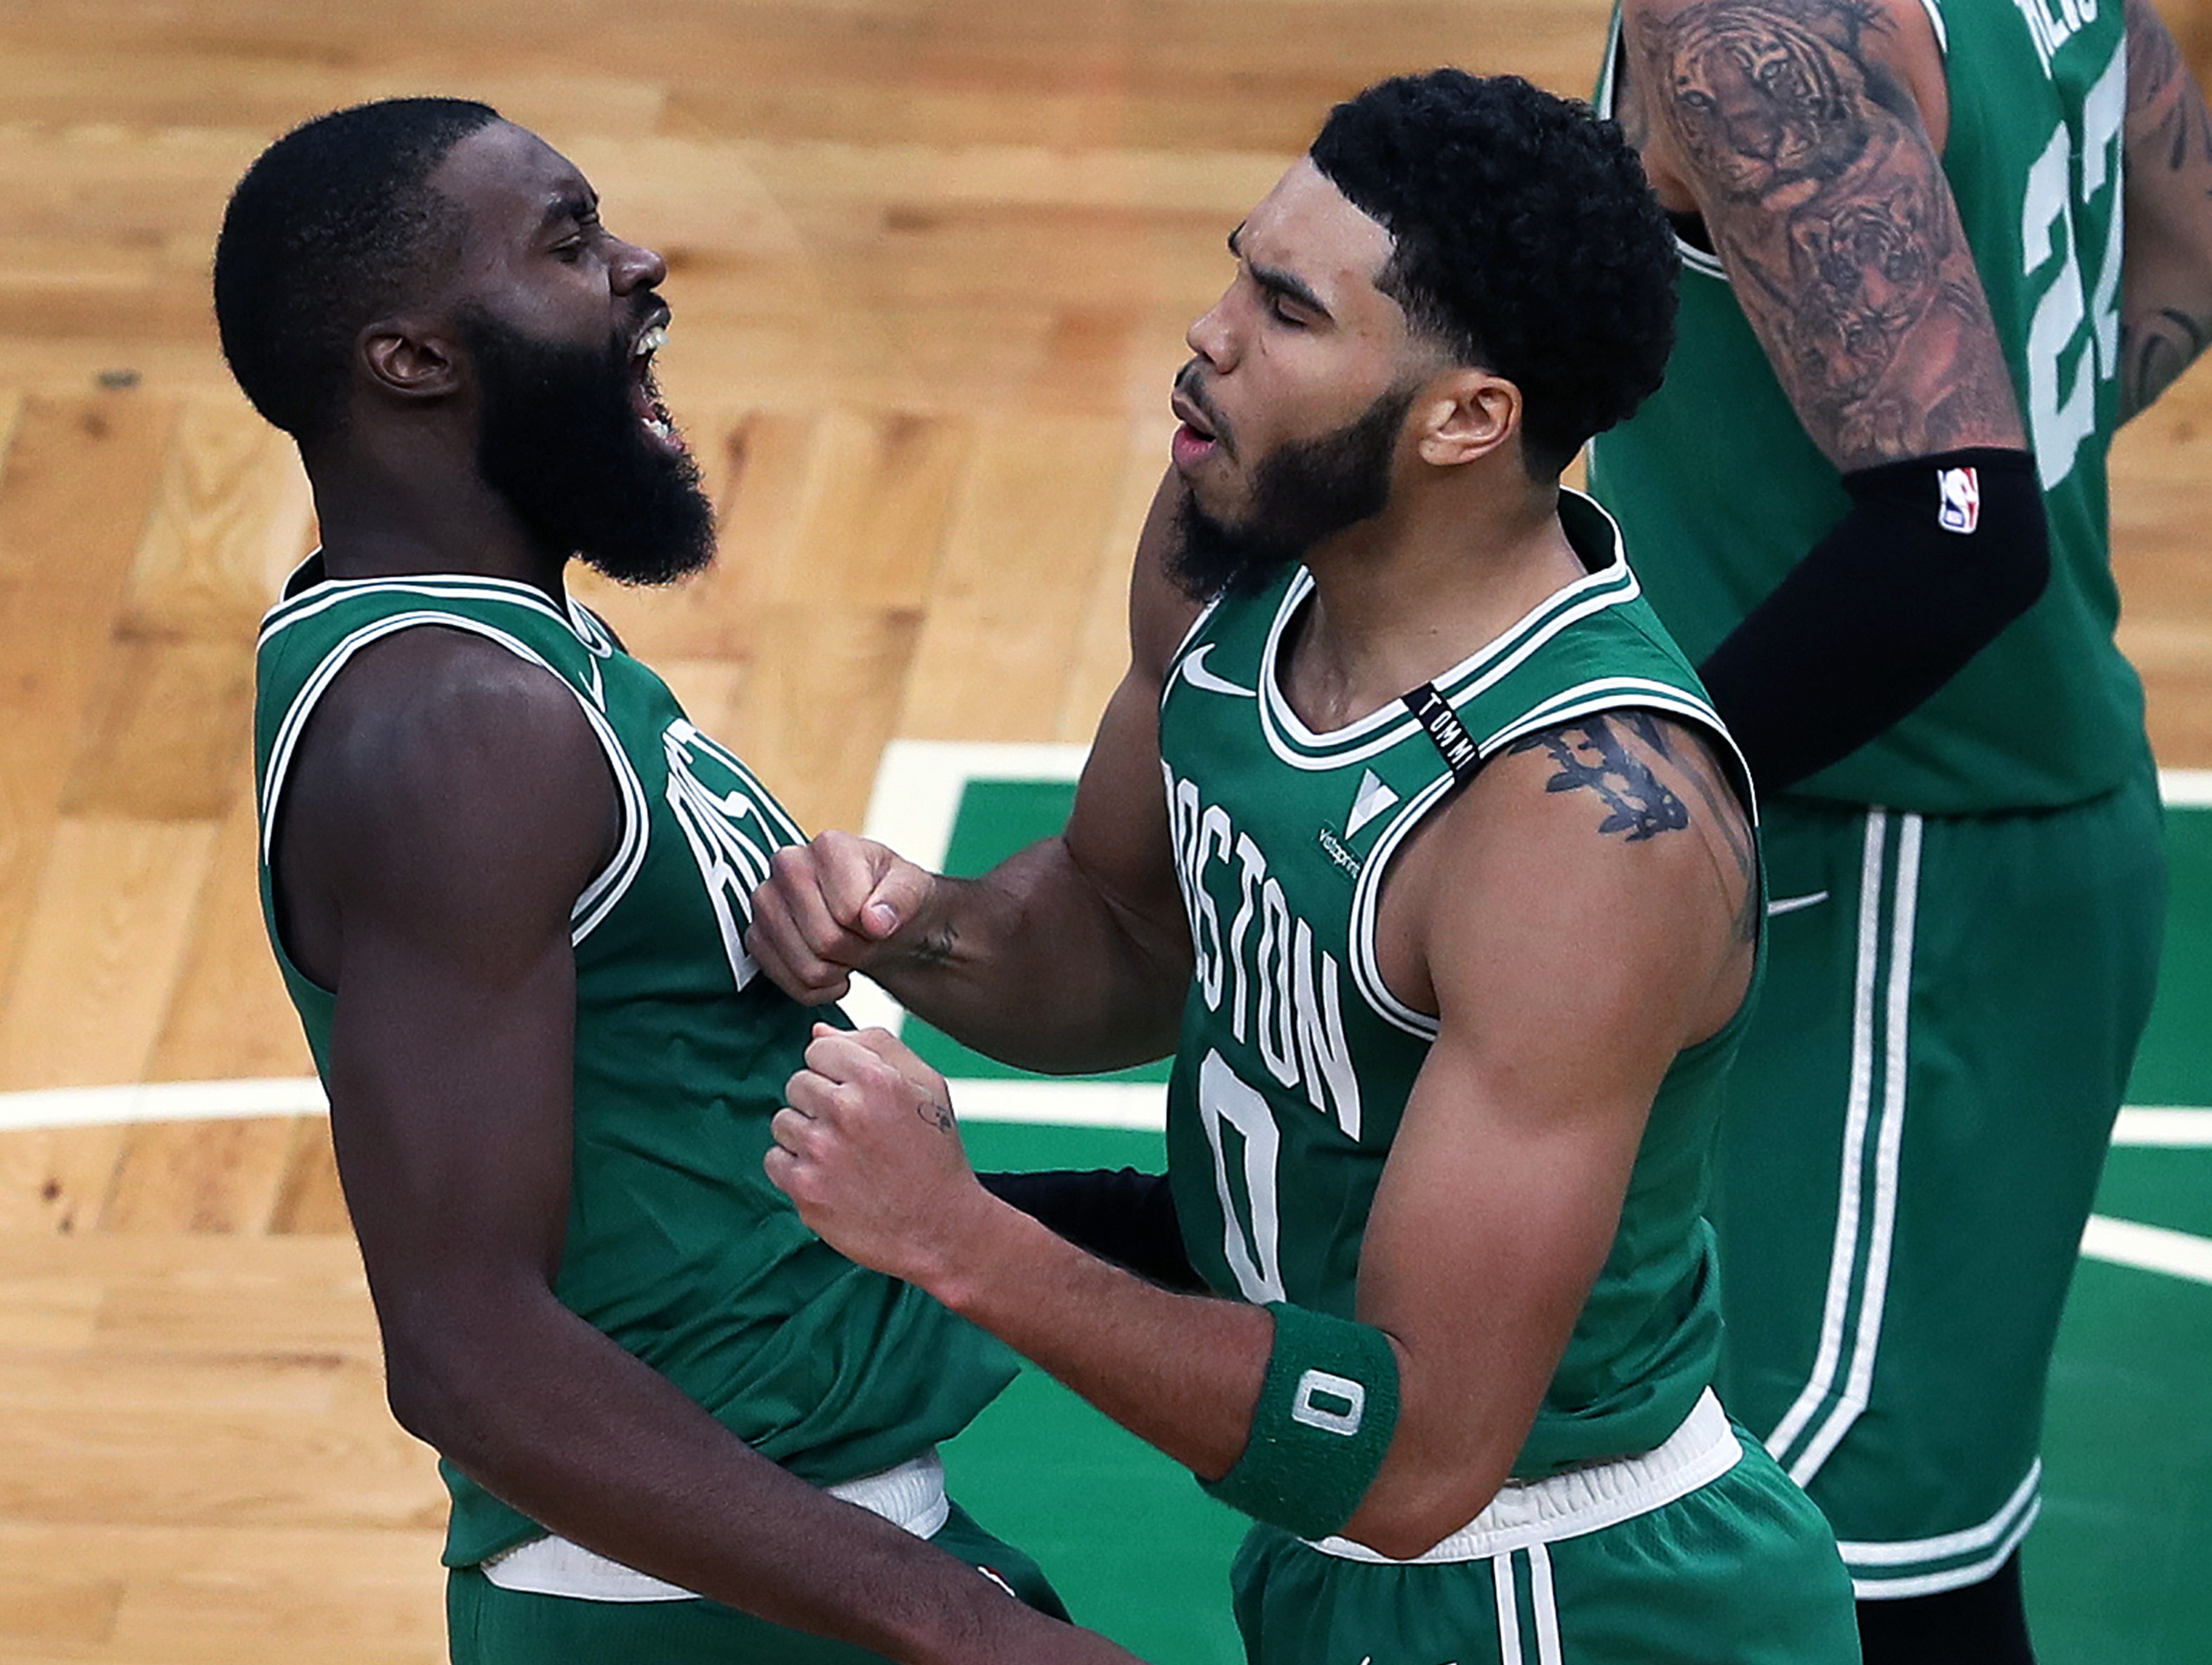 Brad Stevens on Jaylen Brown trade rumor: “nothing doing” - CelticsBlog